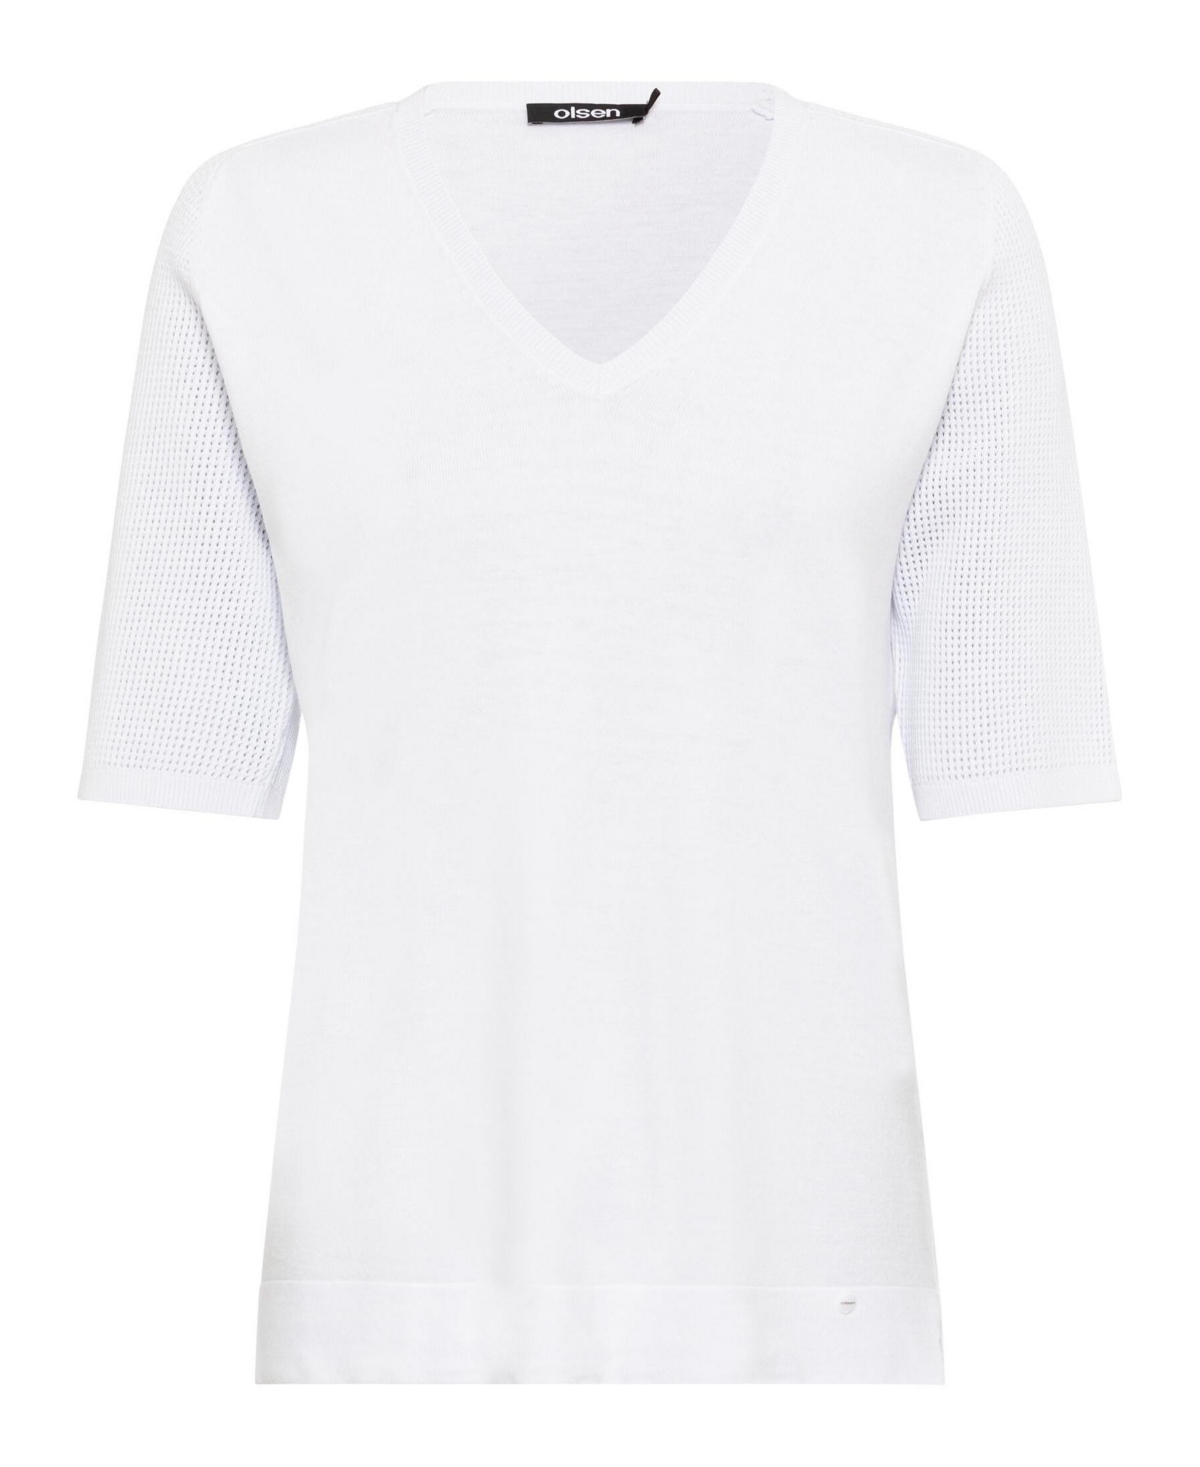 Women's 3/4 Sleeve Basic V-Neck T-Shirt - White